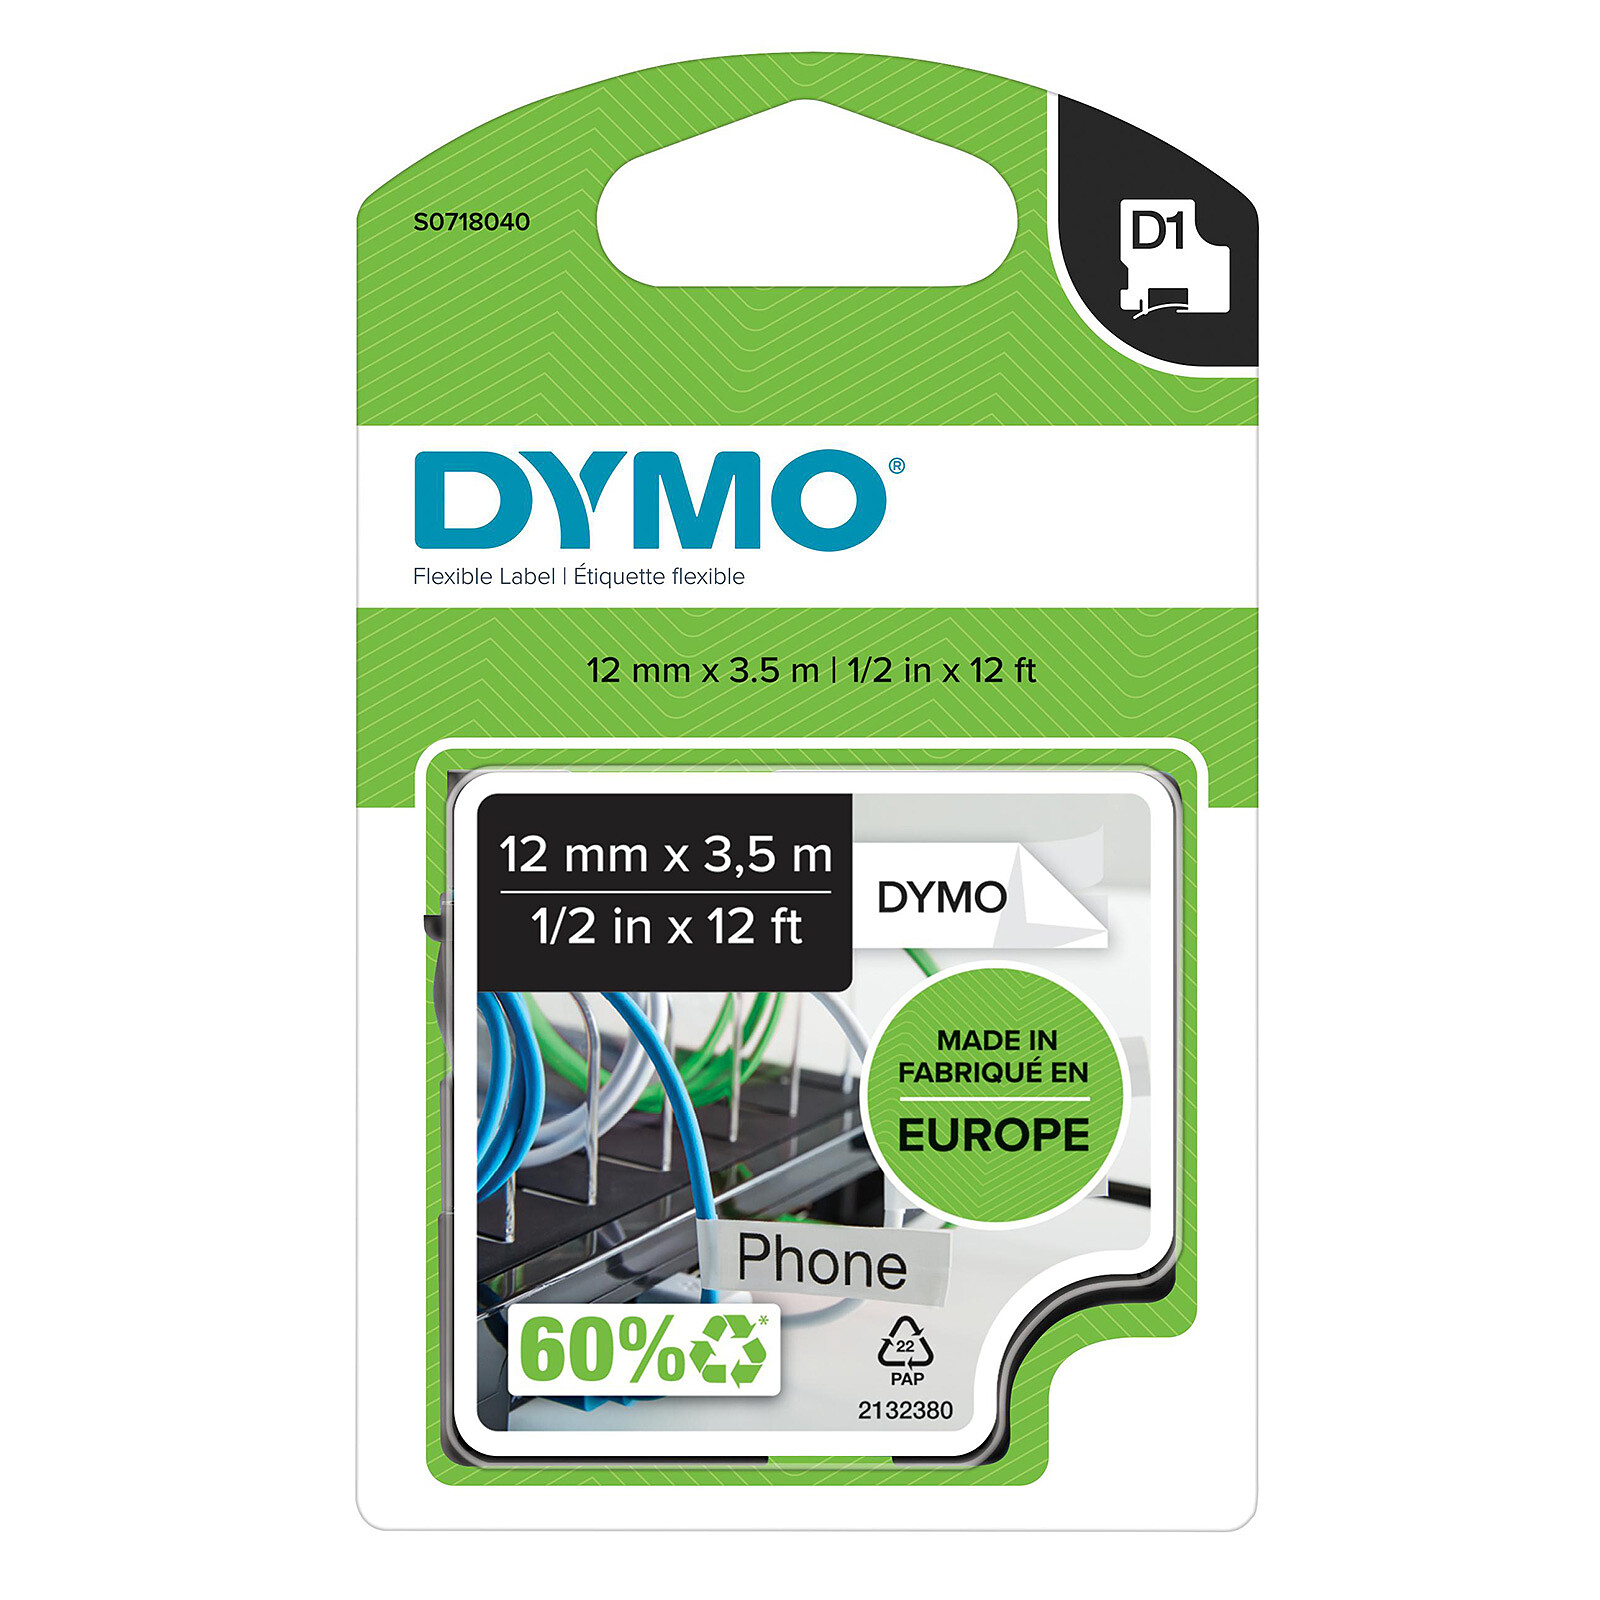 DYMO D1 - bande d'étiquettes - 1 rouleau(x) - Consommable pour imprimante  photo